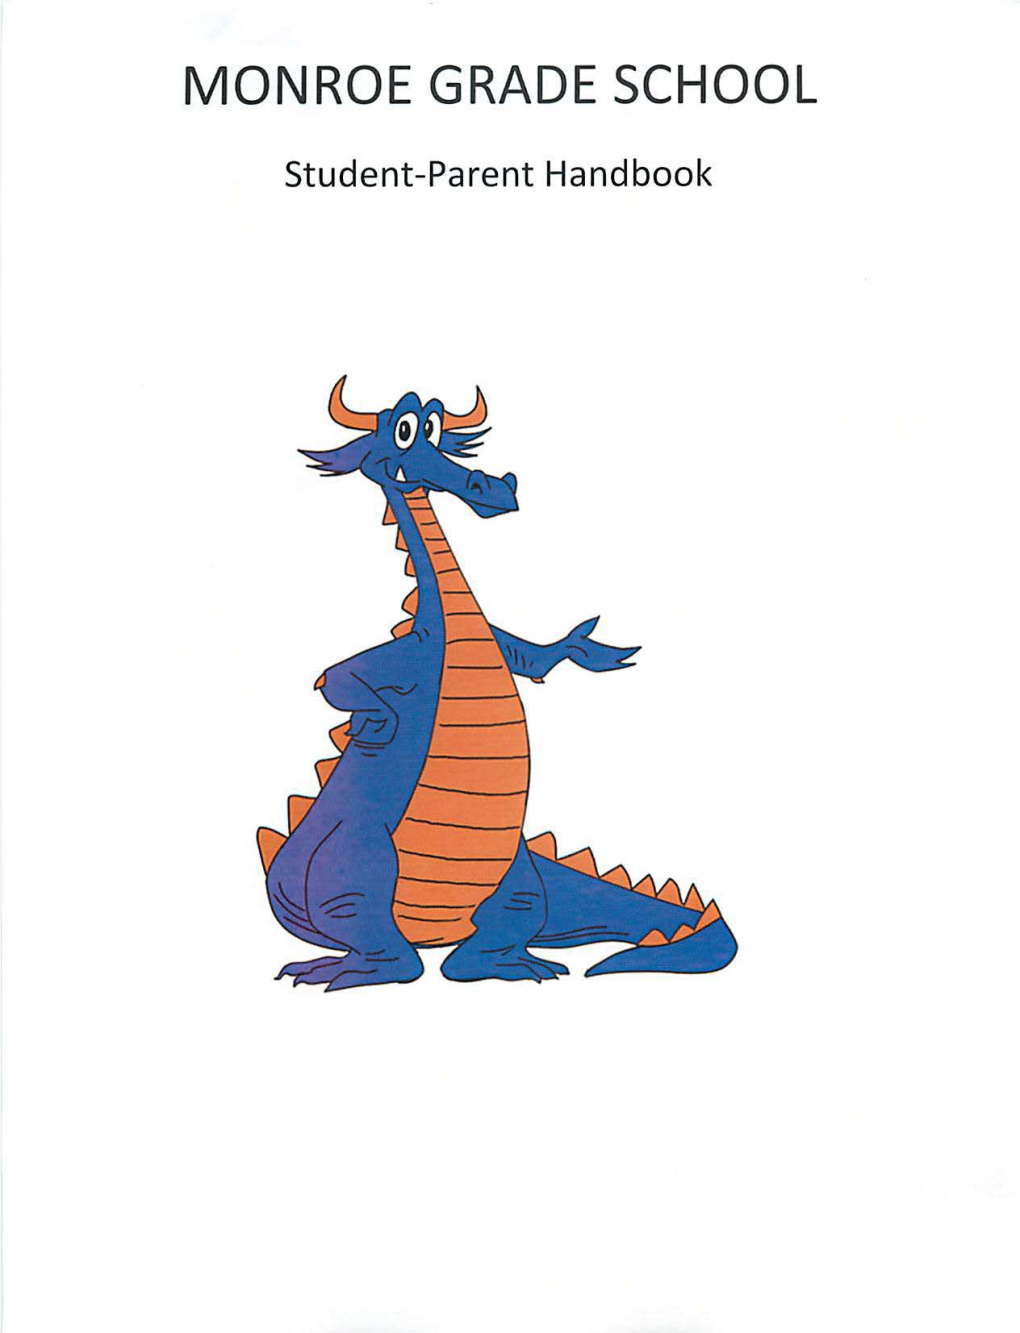 Student-Parent Handbook MONROE GRADE SCHOOL STUDENT-PARENT HANDBOOK GRADES K-8 TABLE of CONTENTS